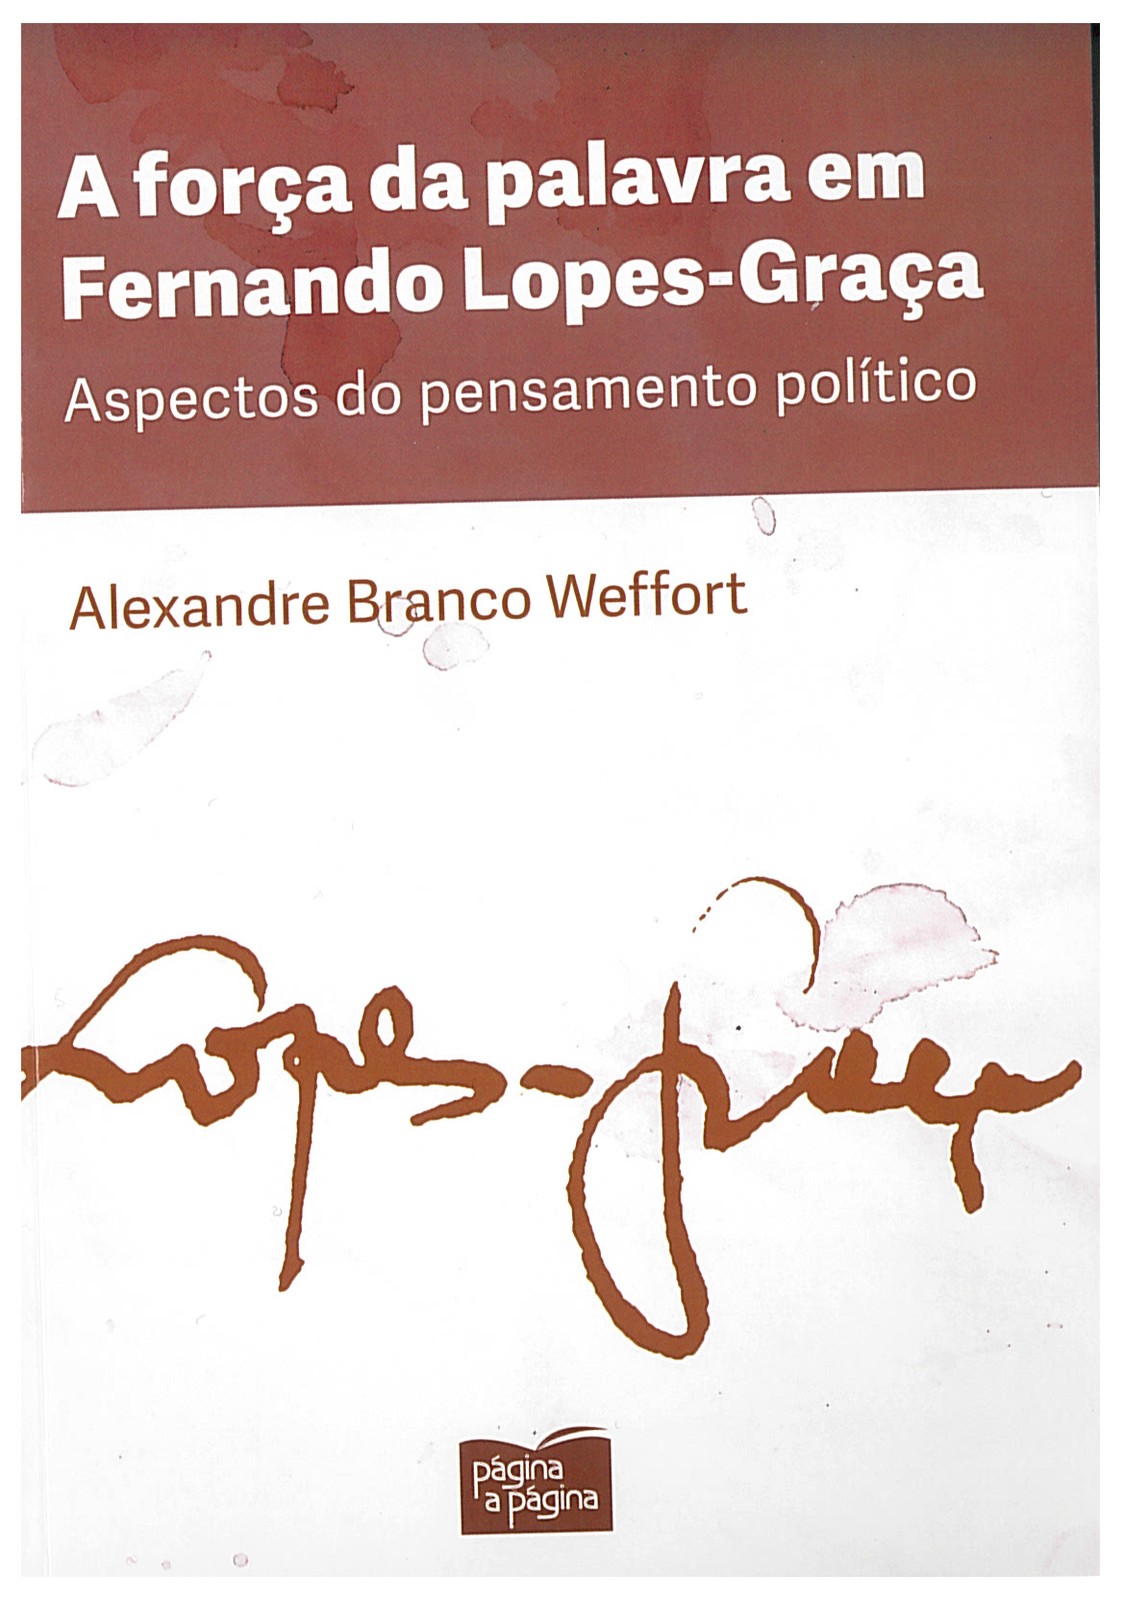 Alexandre Branco Weffort - A força da palavra em Fernando Lopes-Graça